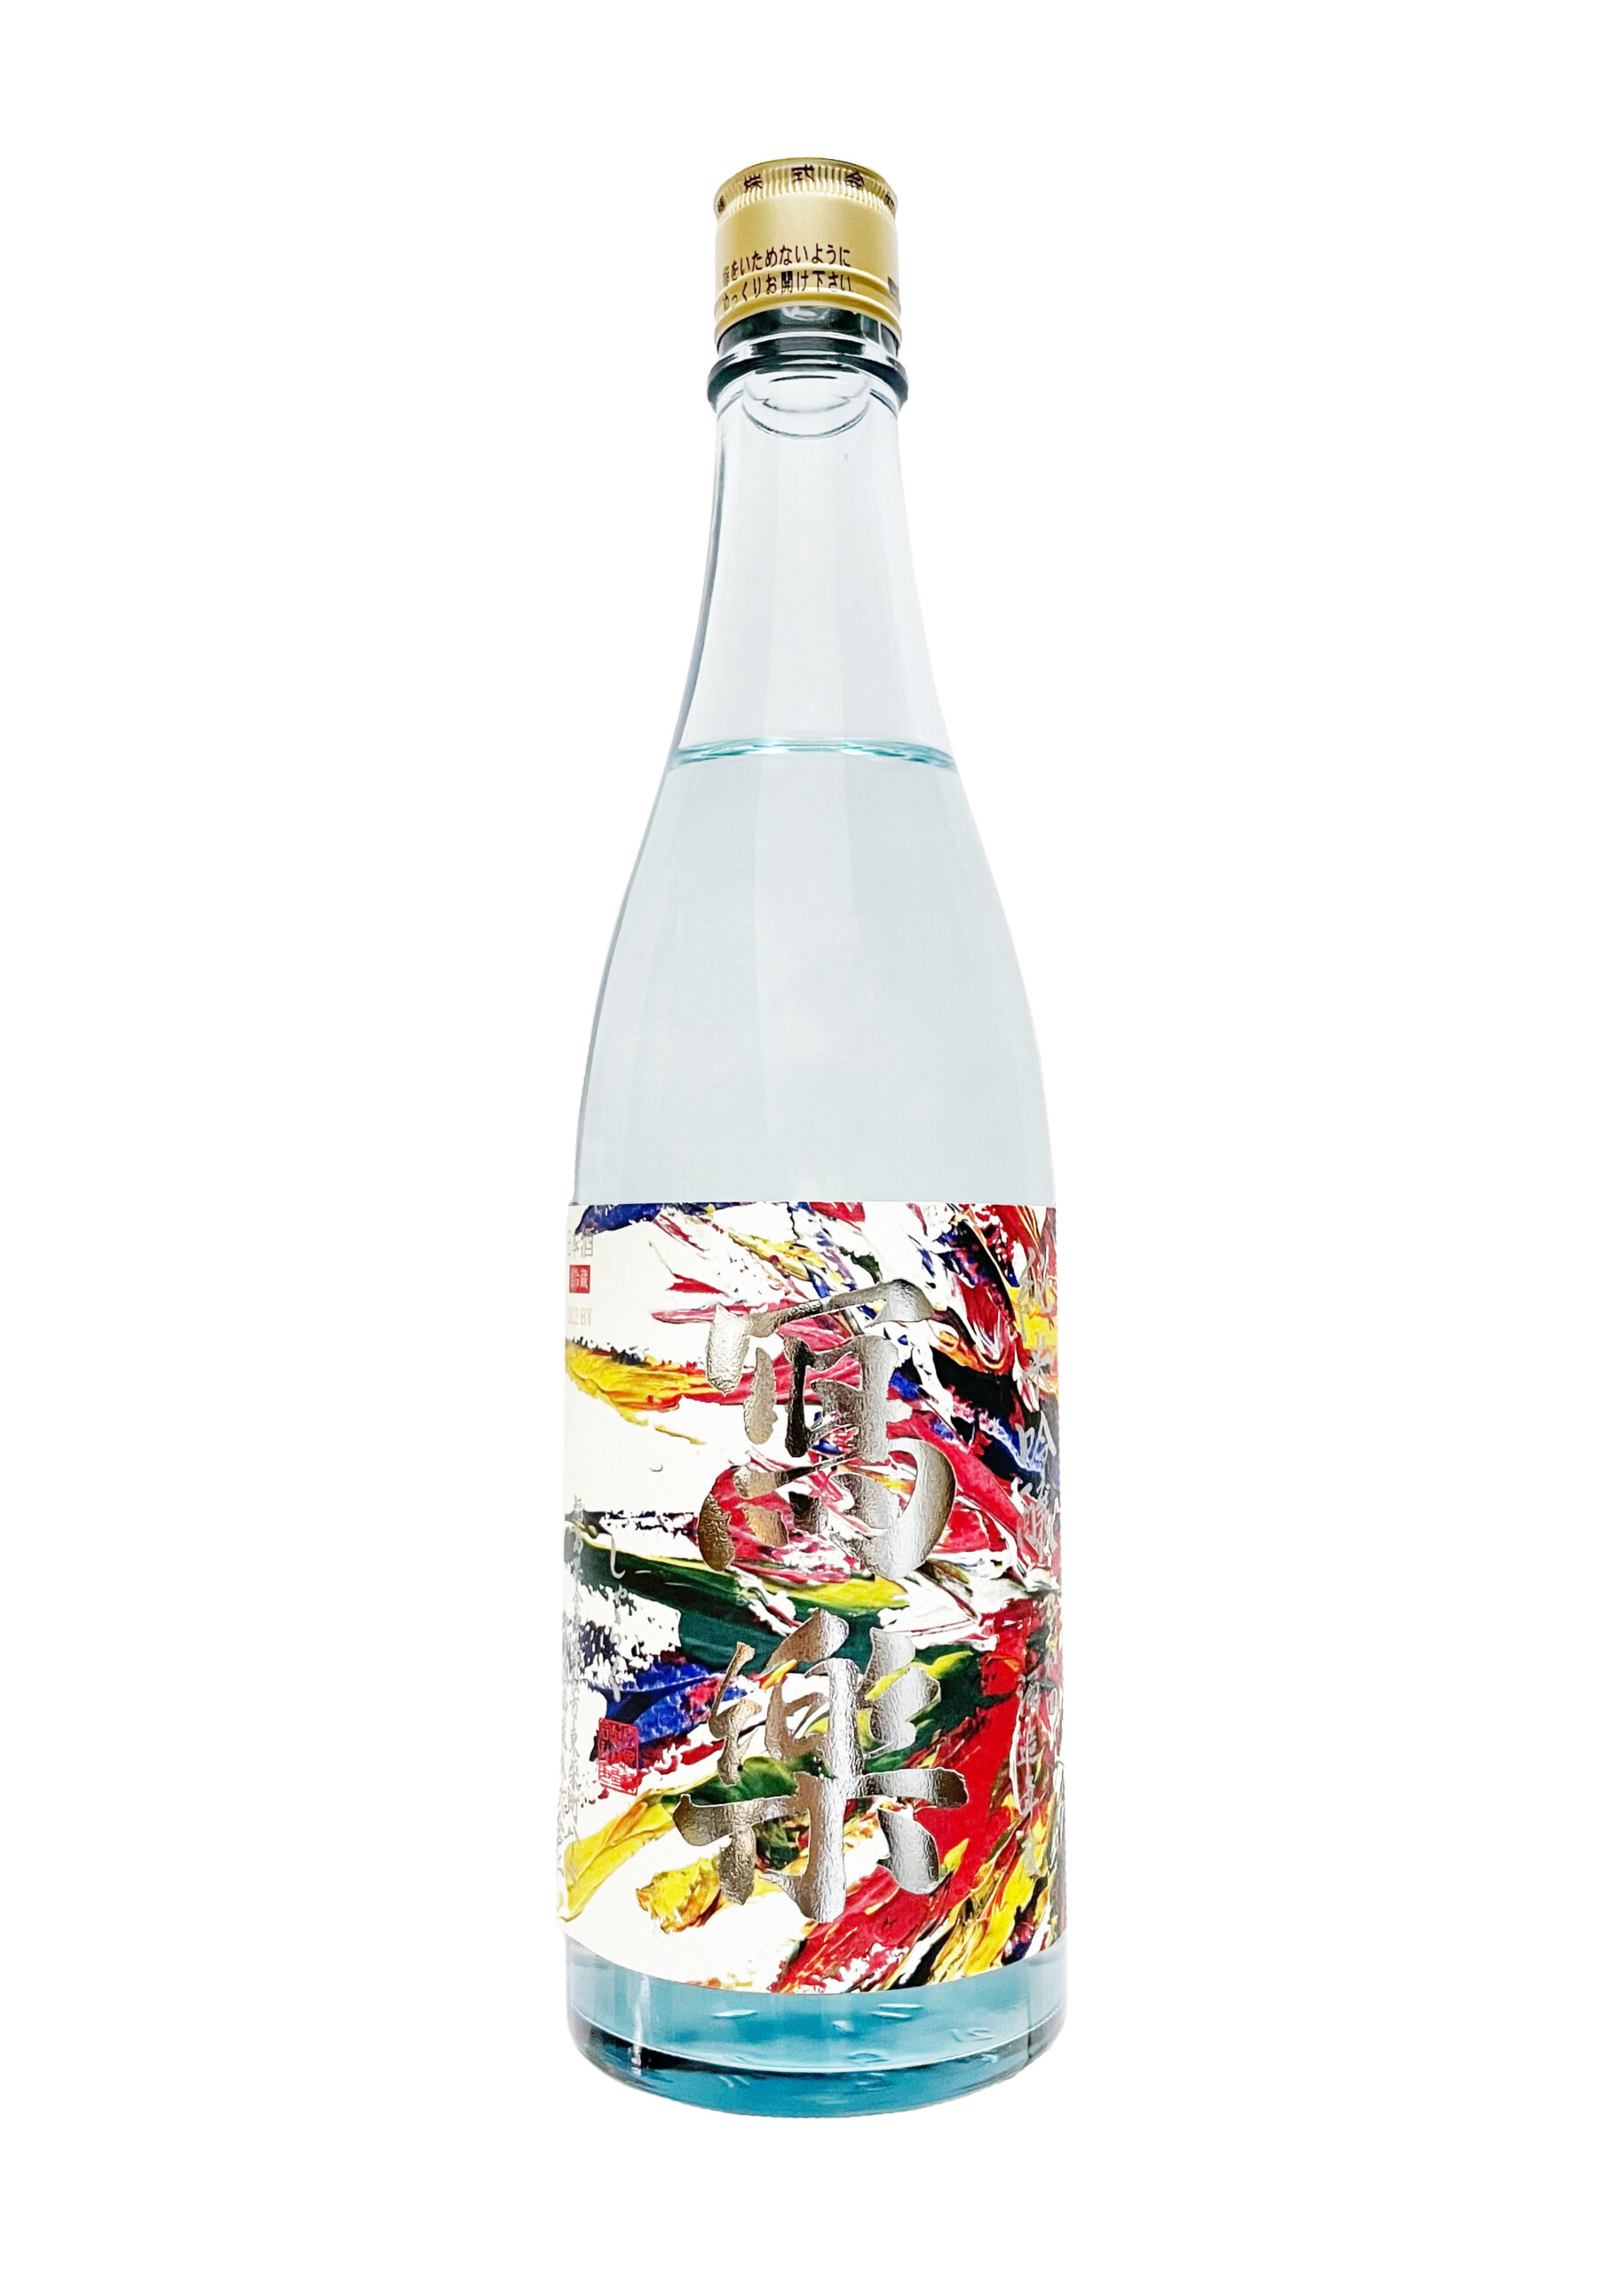 宮泉銘醸「冩樂」×ACIDMAN 日本酒コラボ決定！ ACIDMAN 主催フェス「SAI 2022」にて受注販売。